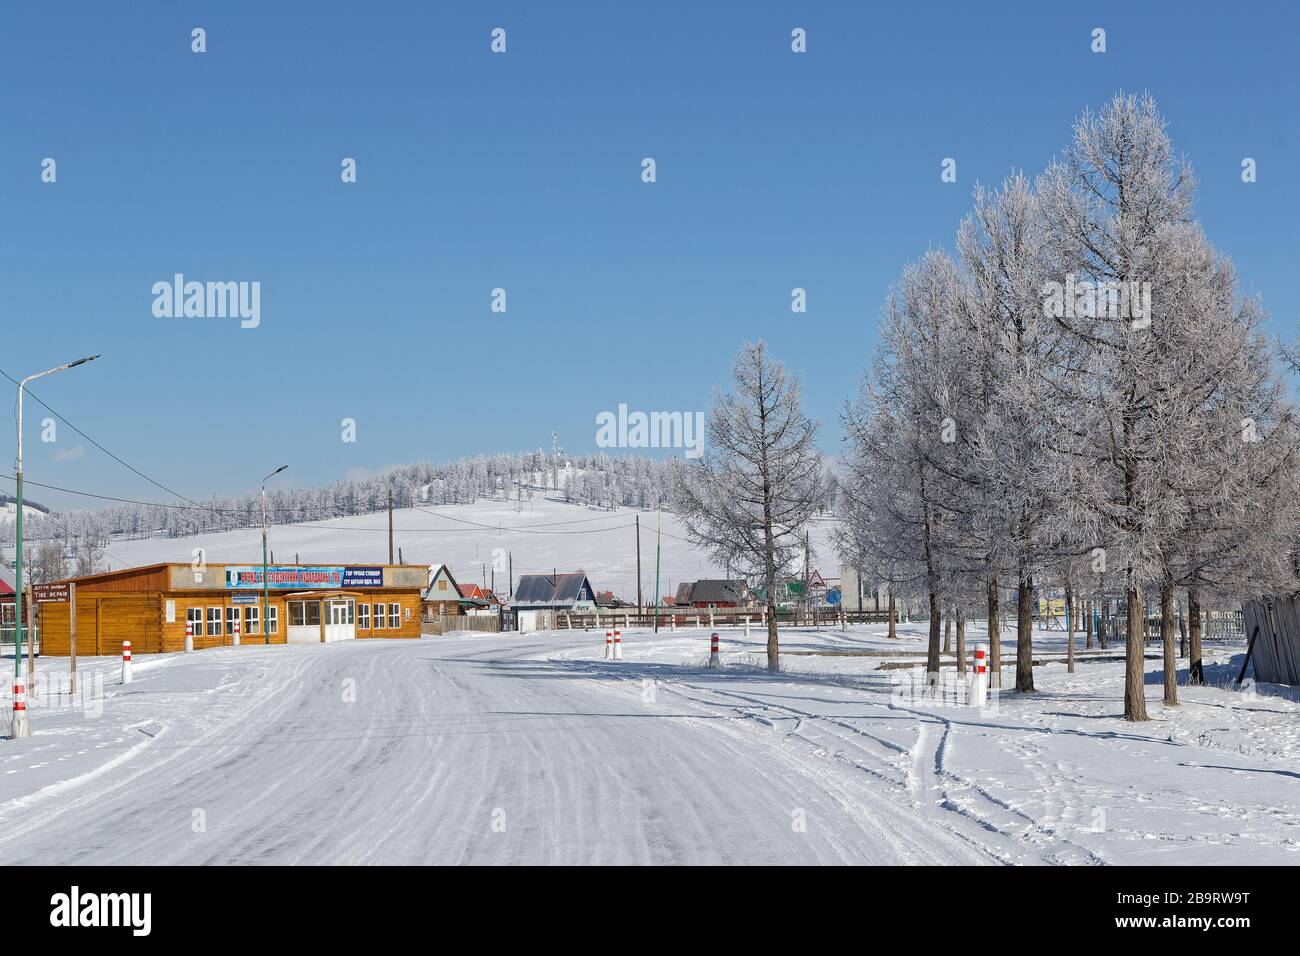 KHATGAL, MONGOLIE, 24 février 2020 : Maisons de Khatagal. La petite ville est connue comme l'une des villes les plus froides de Mongolie, mais elle doit son récent deve Banque D'Images